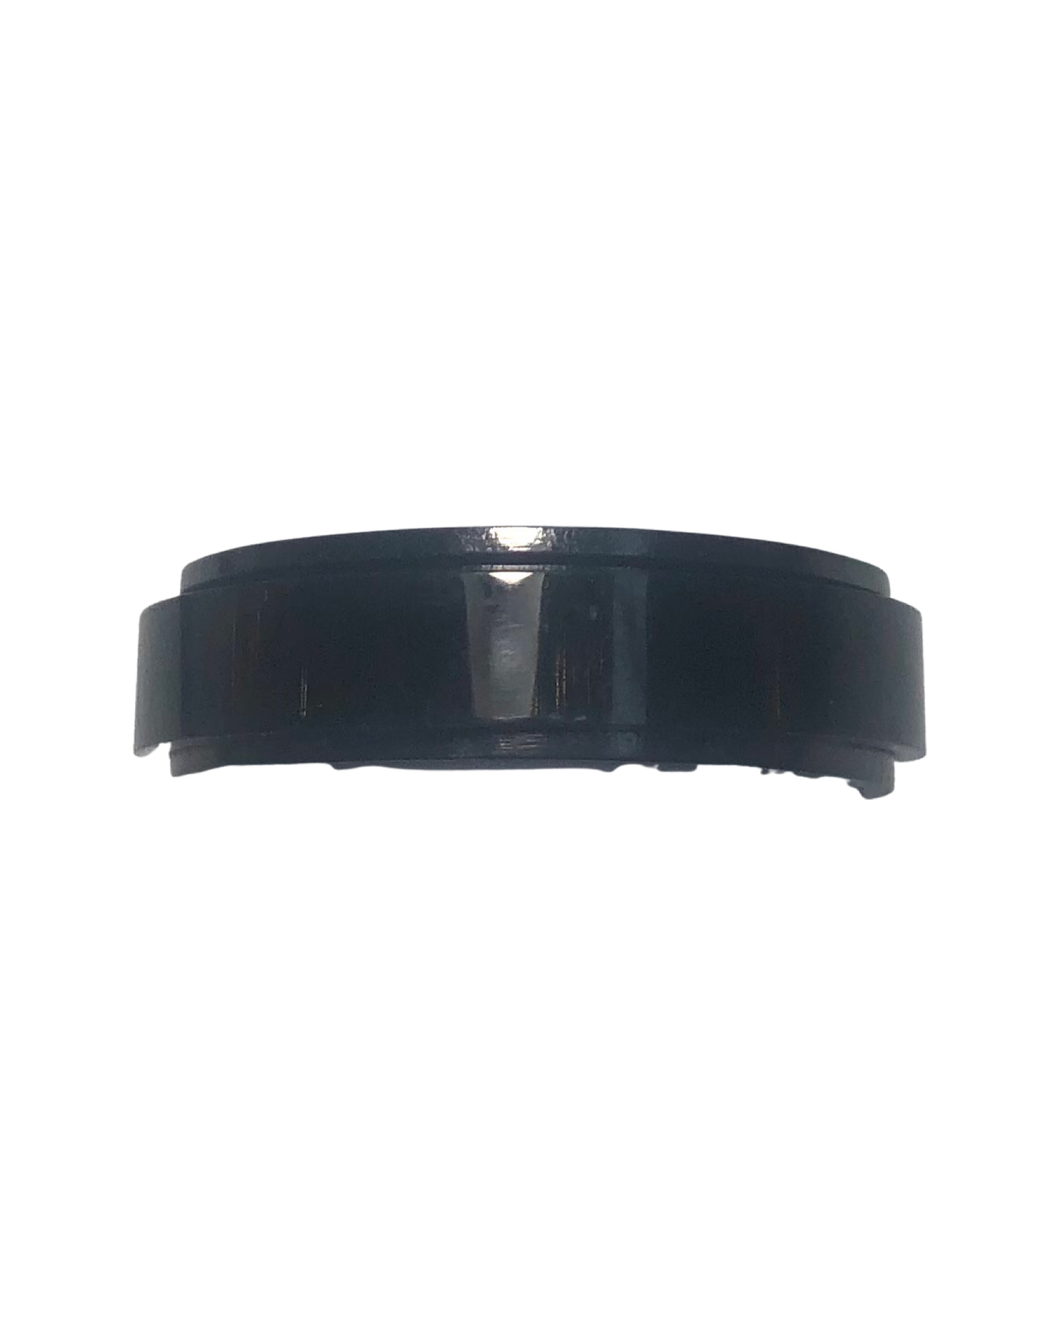 Fidget ring - black spinner.   (FR12)